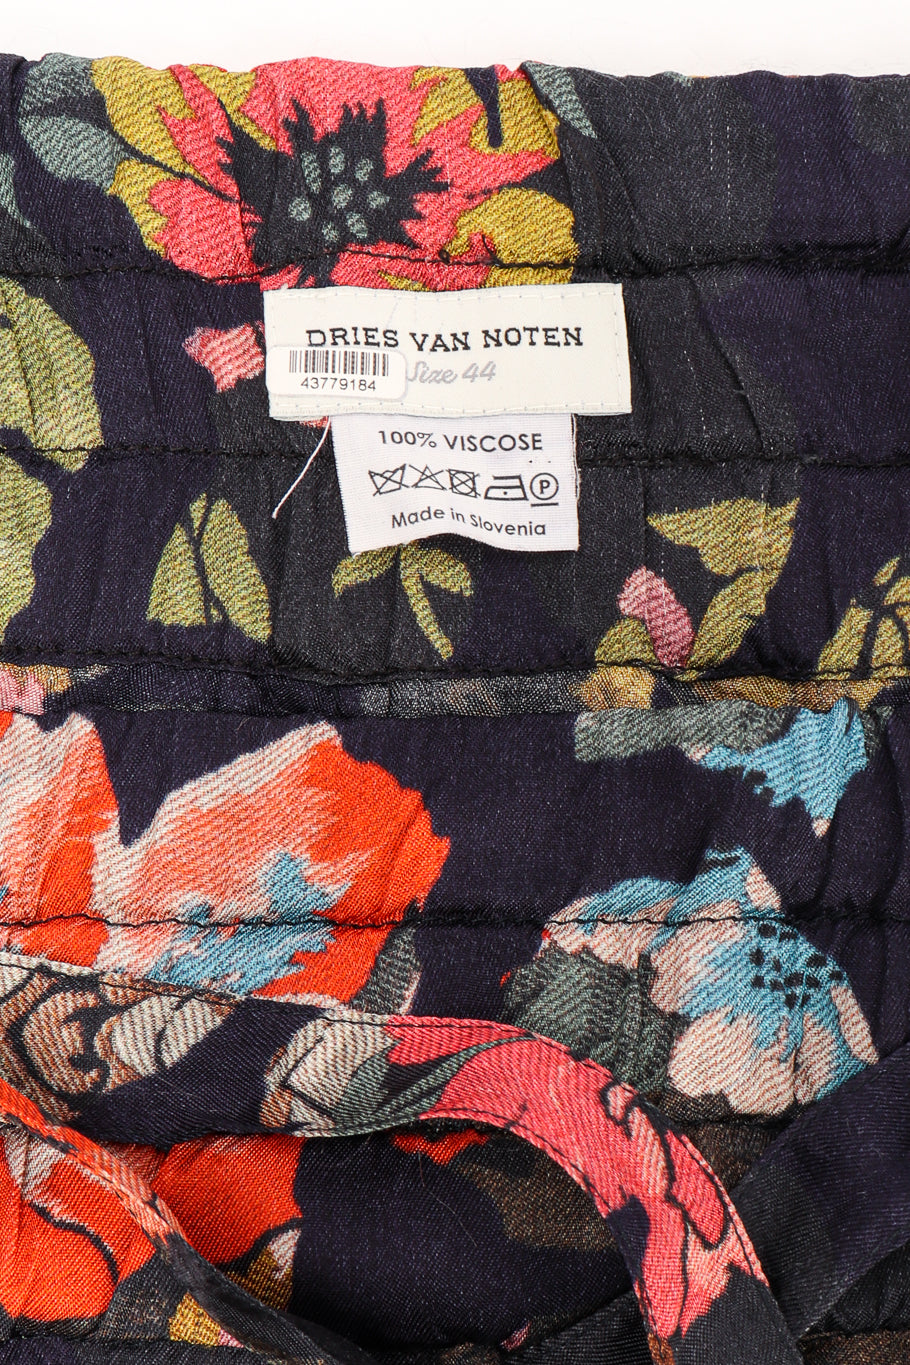 Blazer and pant set by Dries Van Noten pants label @recessla